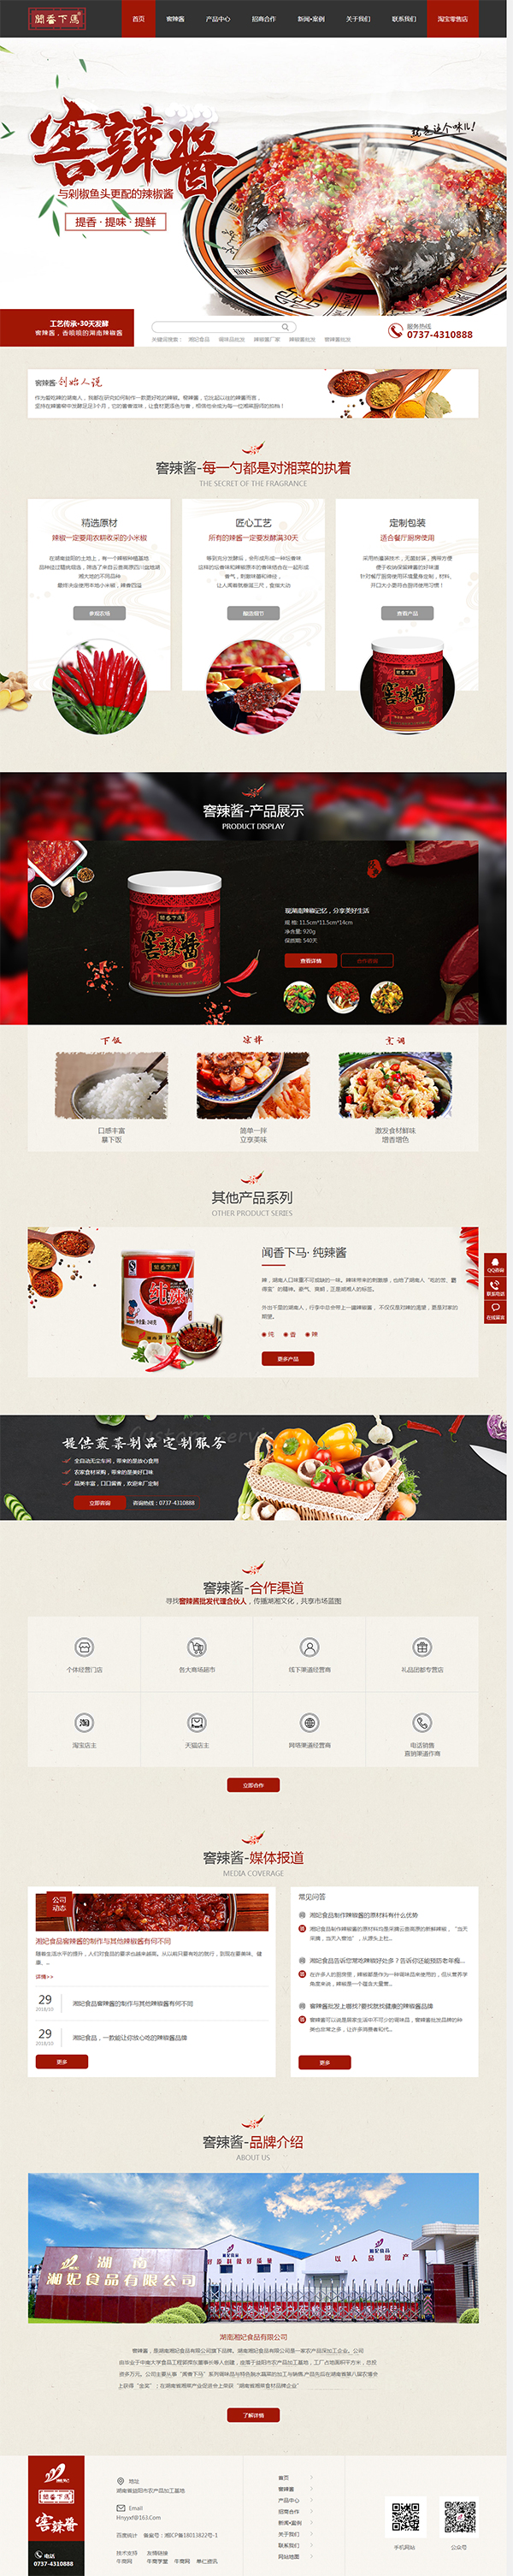 湘妃食品窖辣酱-营销型网站首页截图